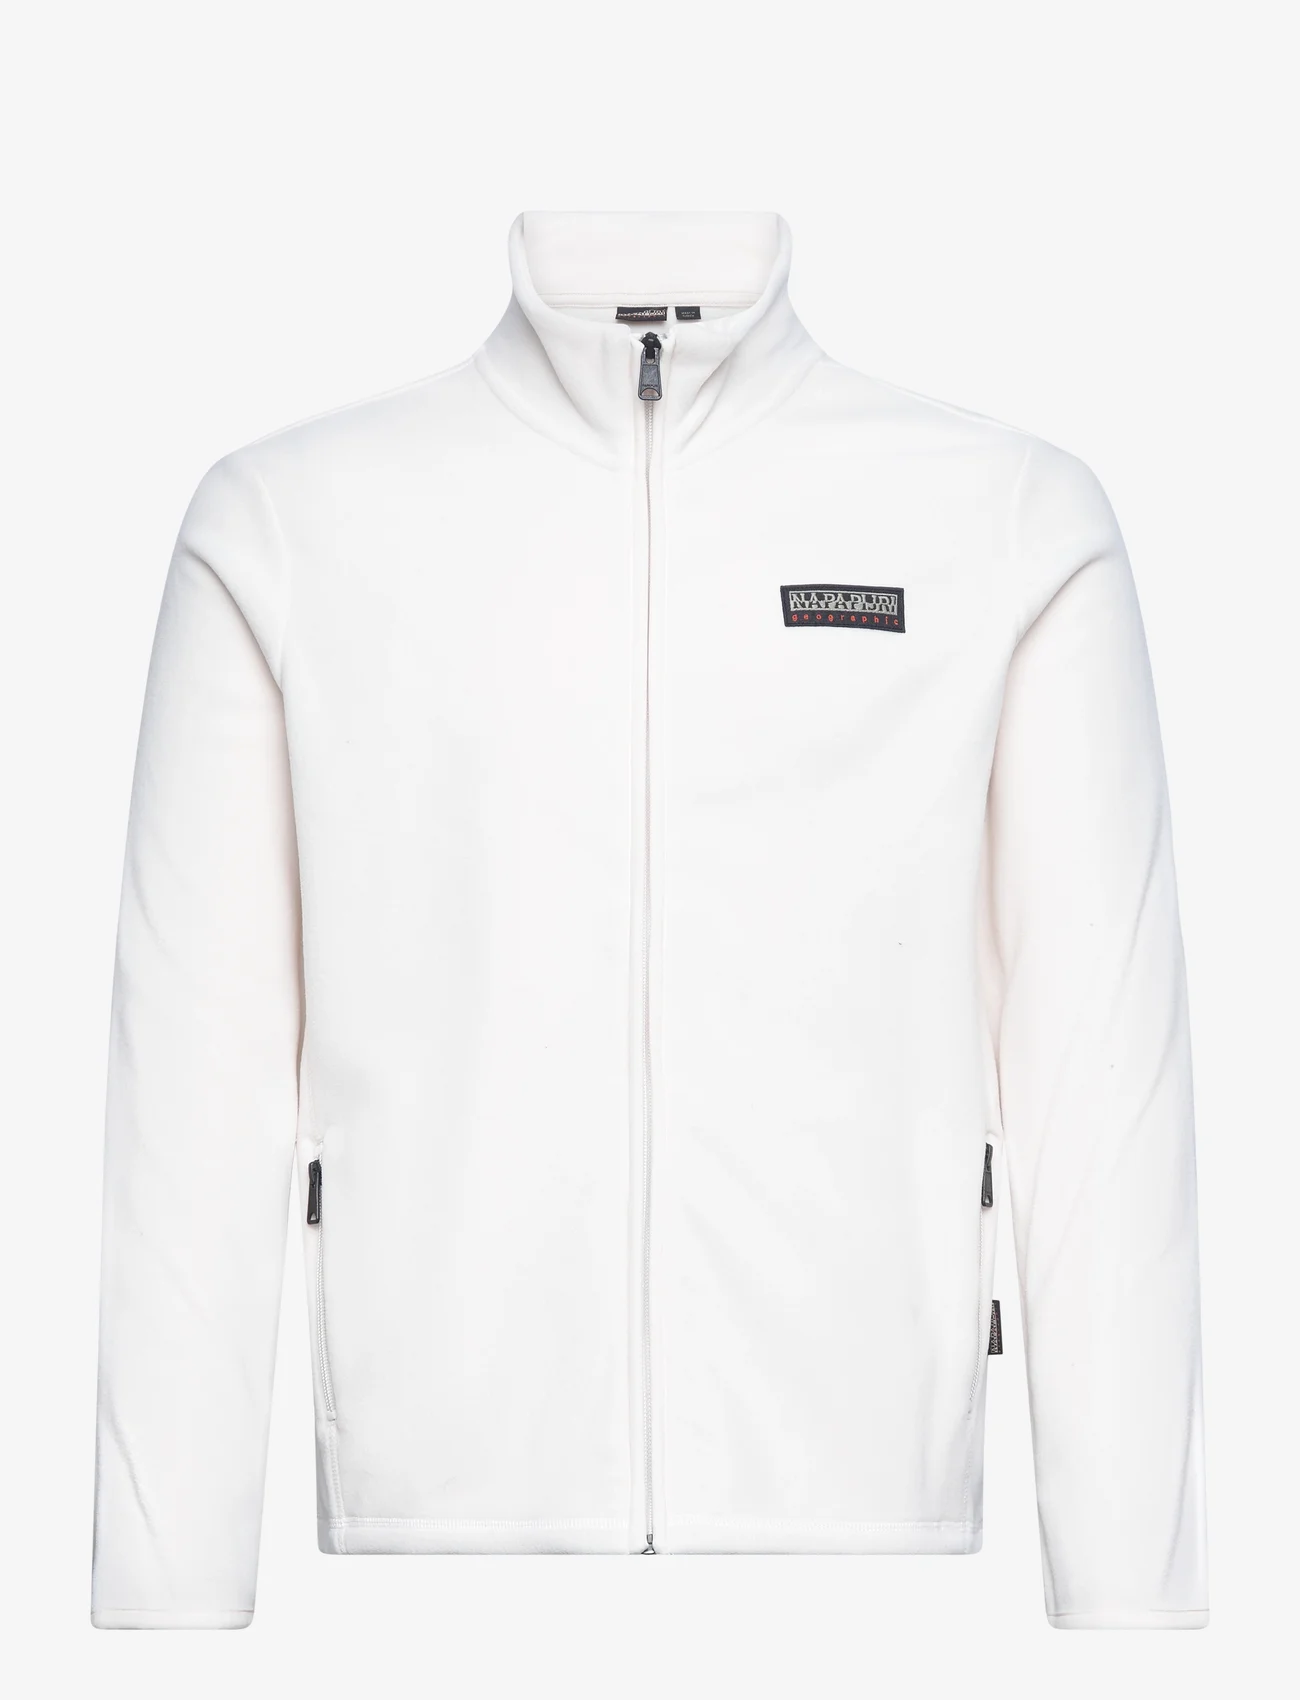 Napapijri - T-IAATO FZ - mid layer jackets - ns5 whitecap gray - 0